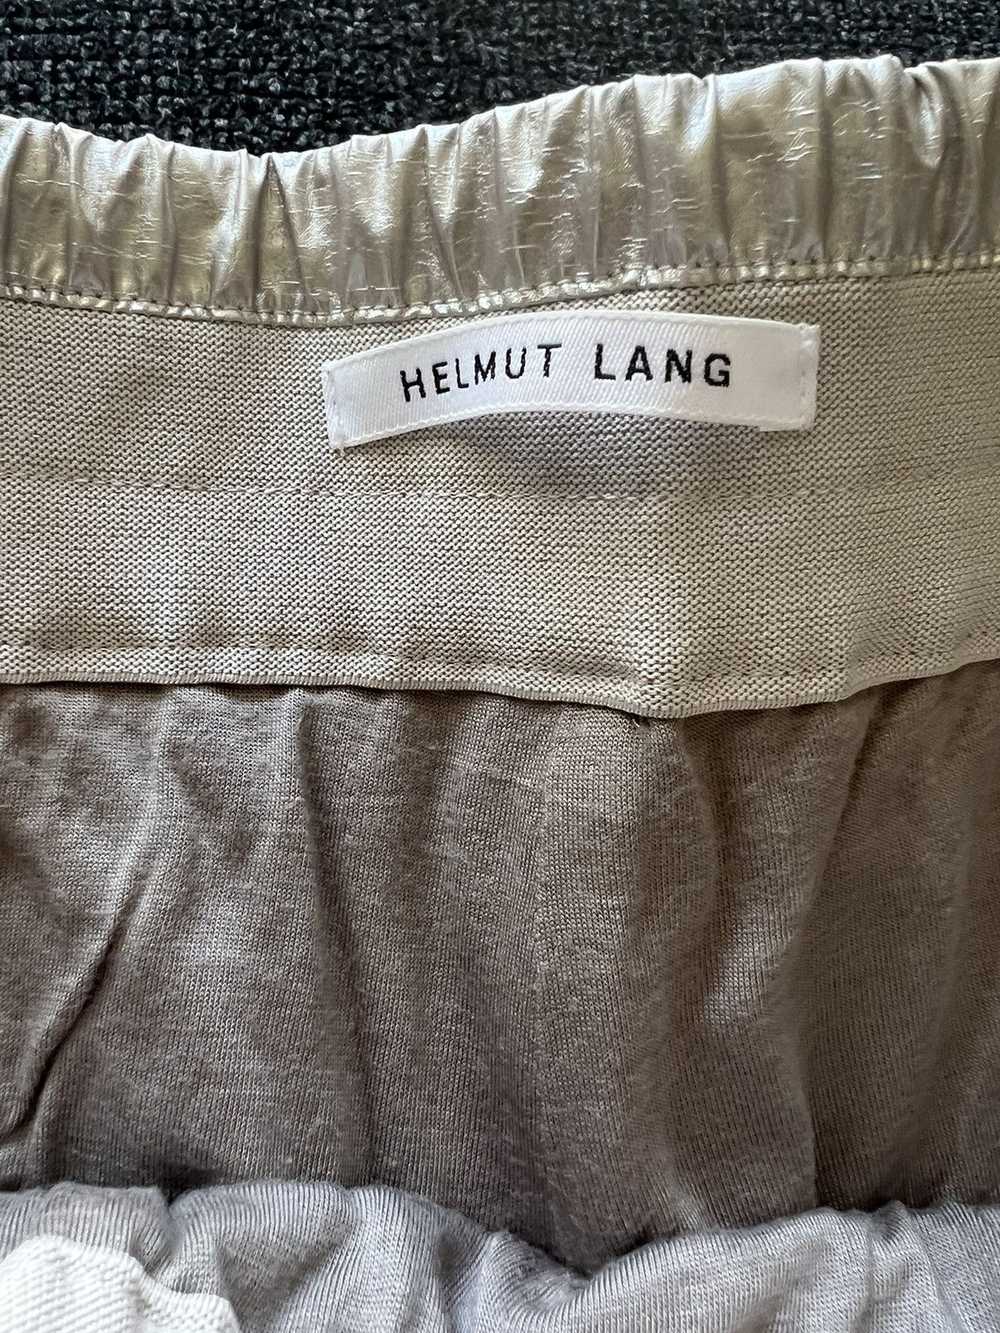 Helmut Lang Helmut Lang Astro Biker Shorts - image 3